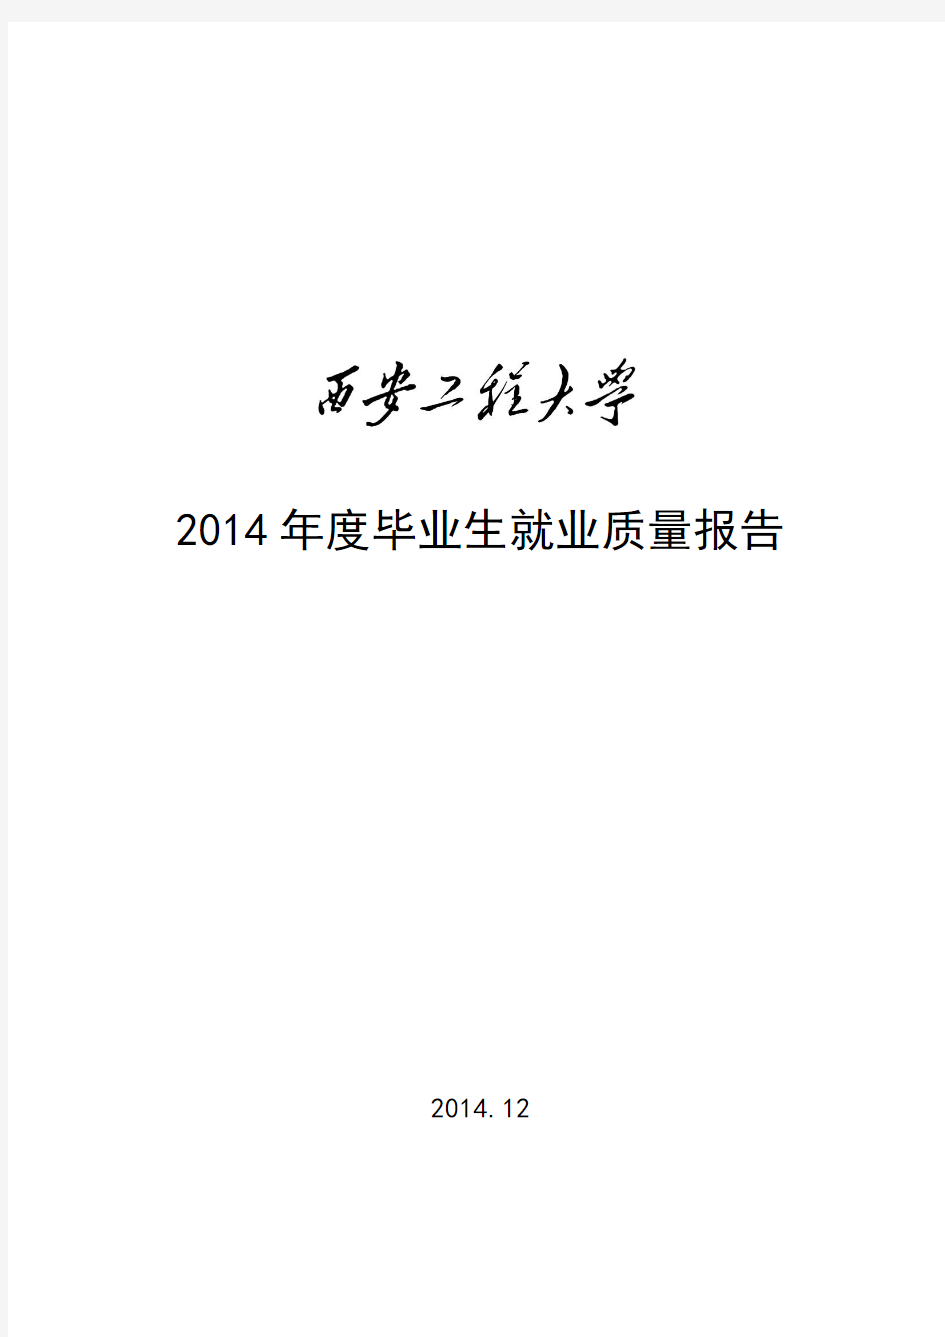 2014年度毕业生就业质量报告